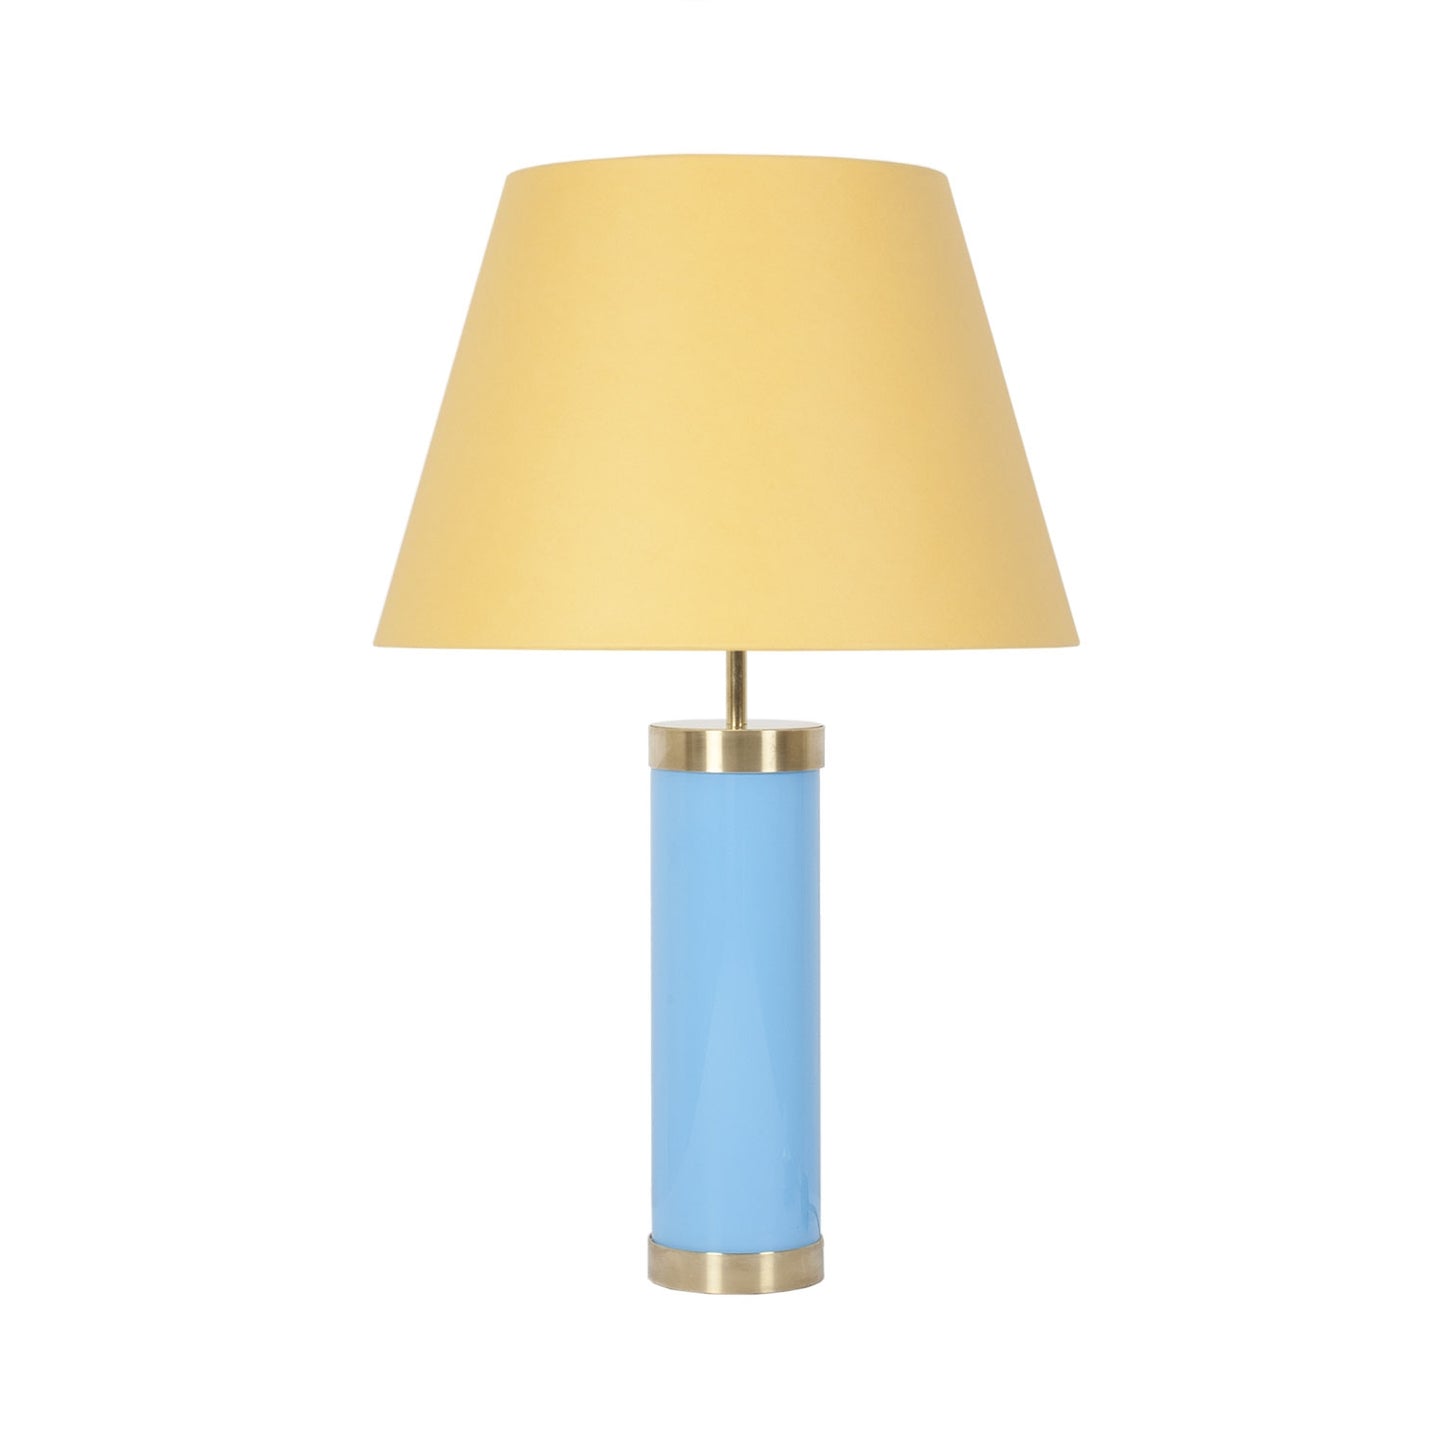 Glass & Brass Lamp - Blue